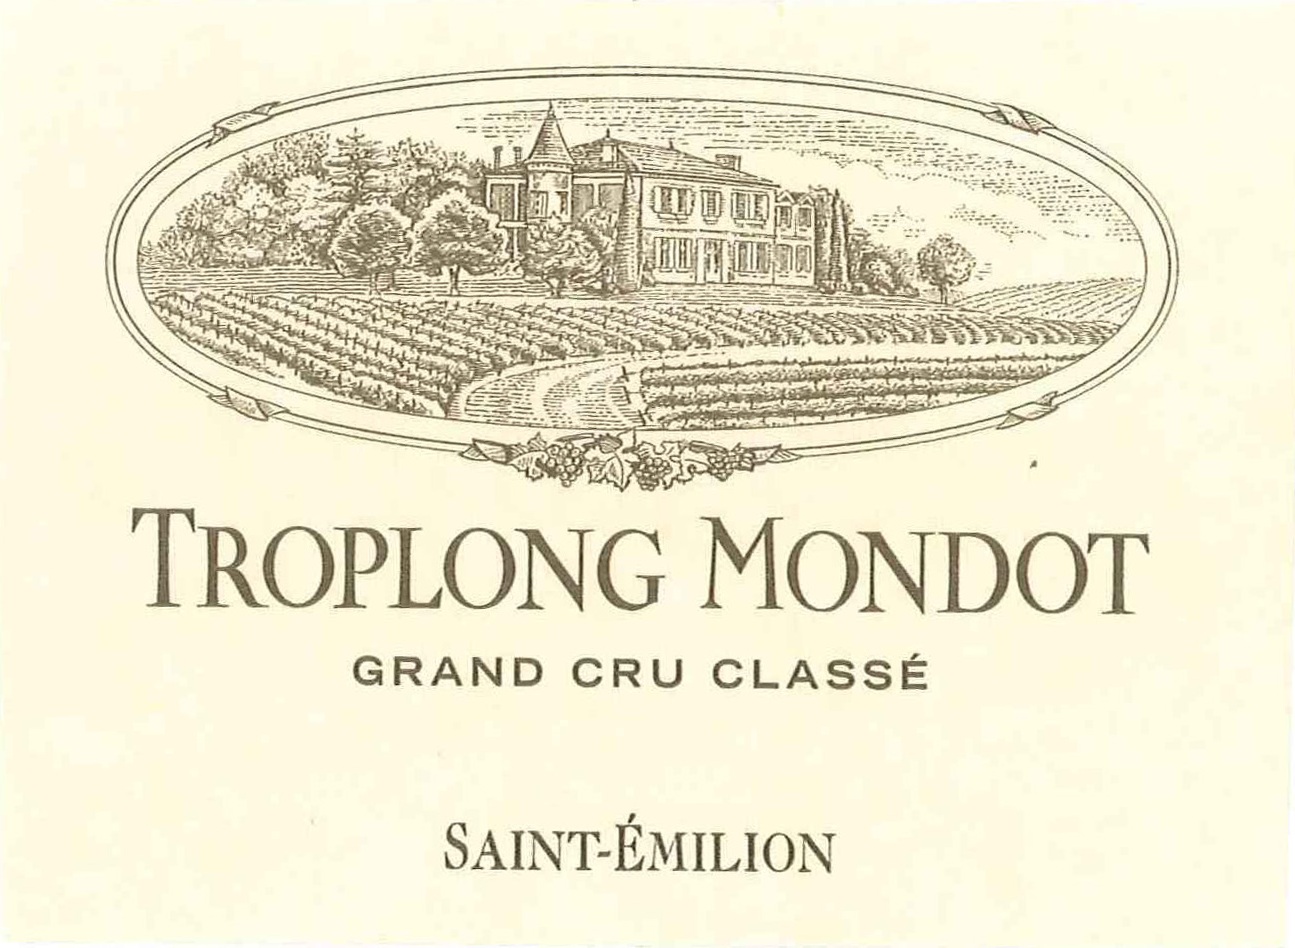 Chateau Troplong Mondot label